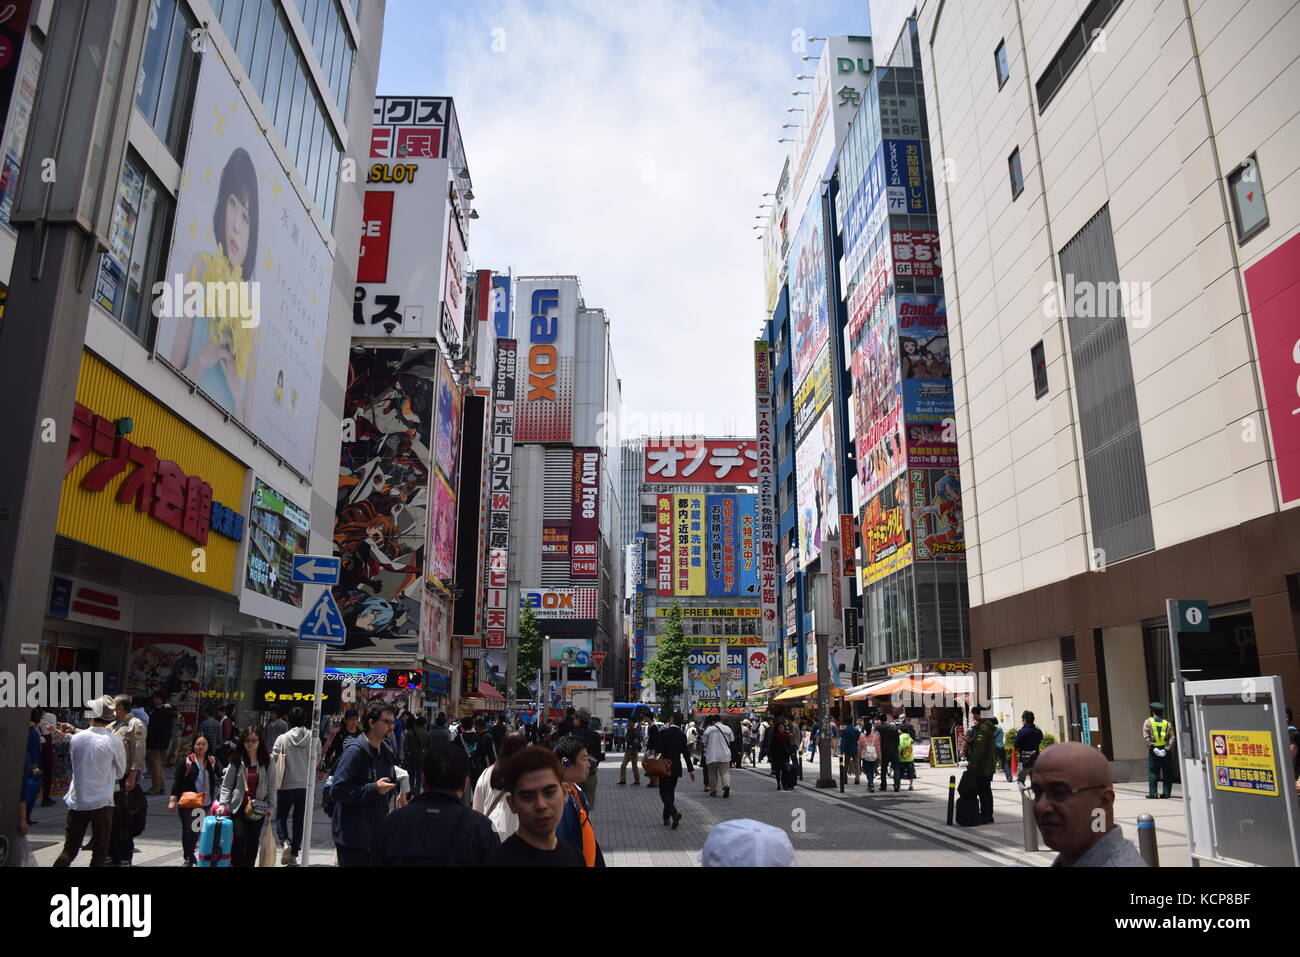 Les publicités sur les bâtiments colorés à Akihabara, le célèbre quartier des boutiques de manga et électronique à Tokyo, Japon Banque D'Images